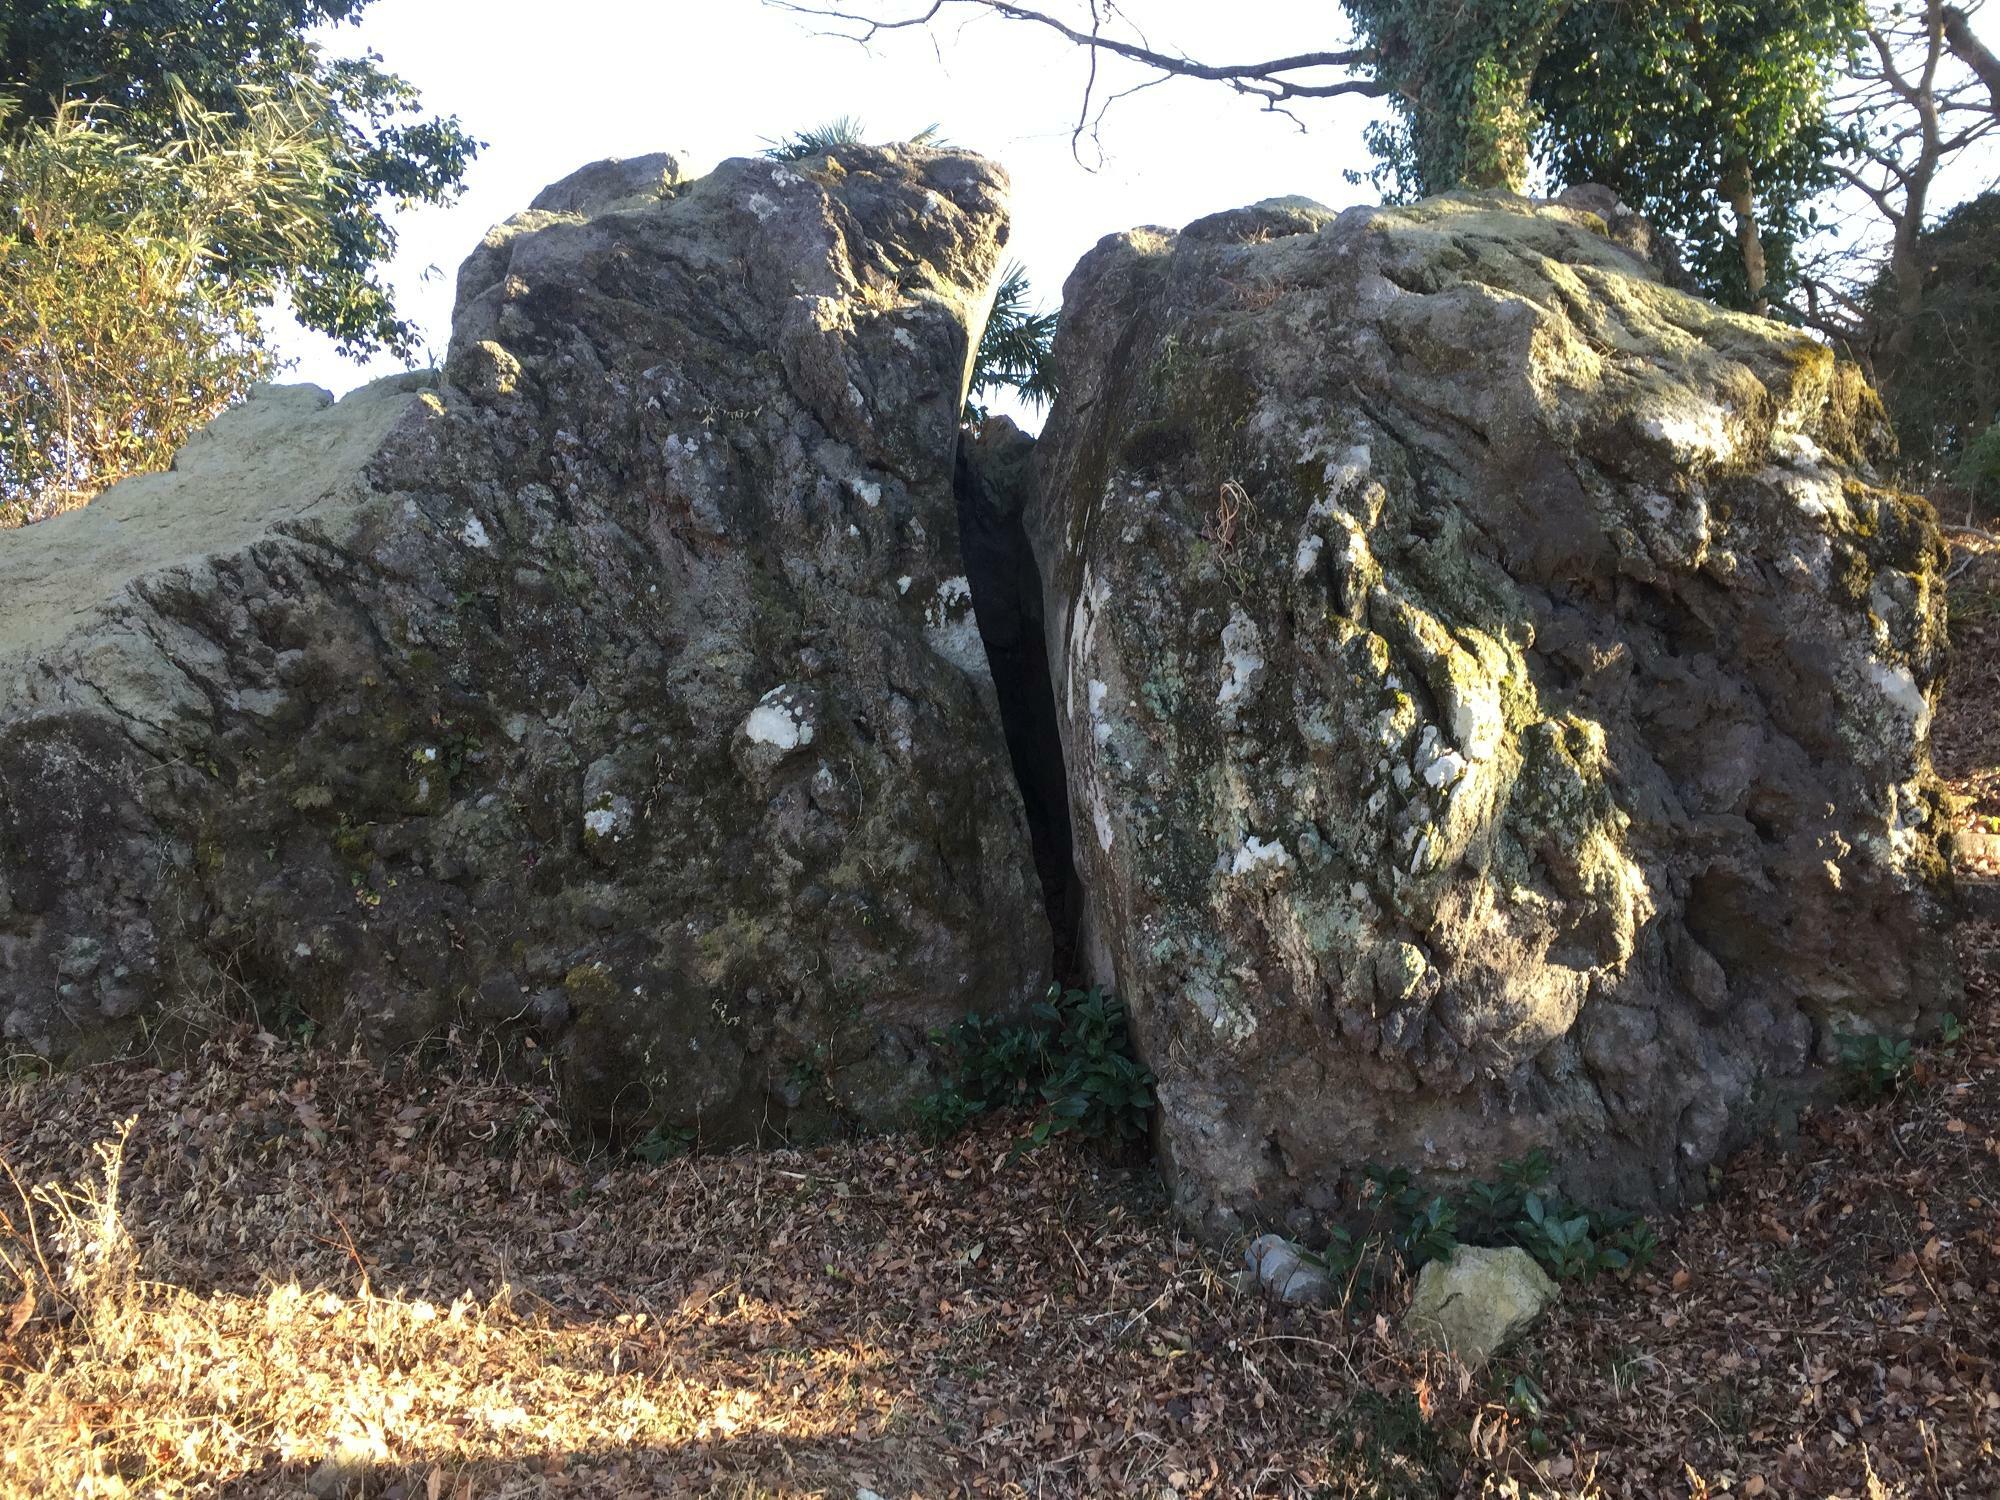 二つに割れた大きな石。これが『曽我の隠れ岩』です。